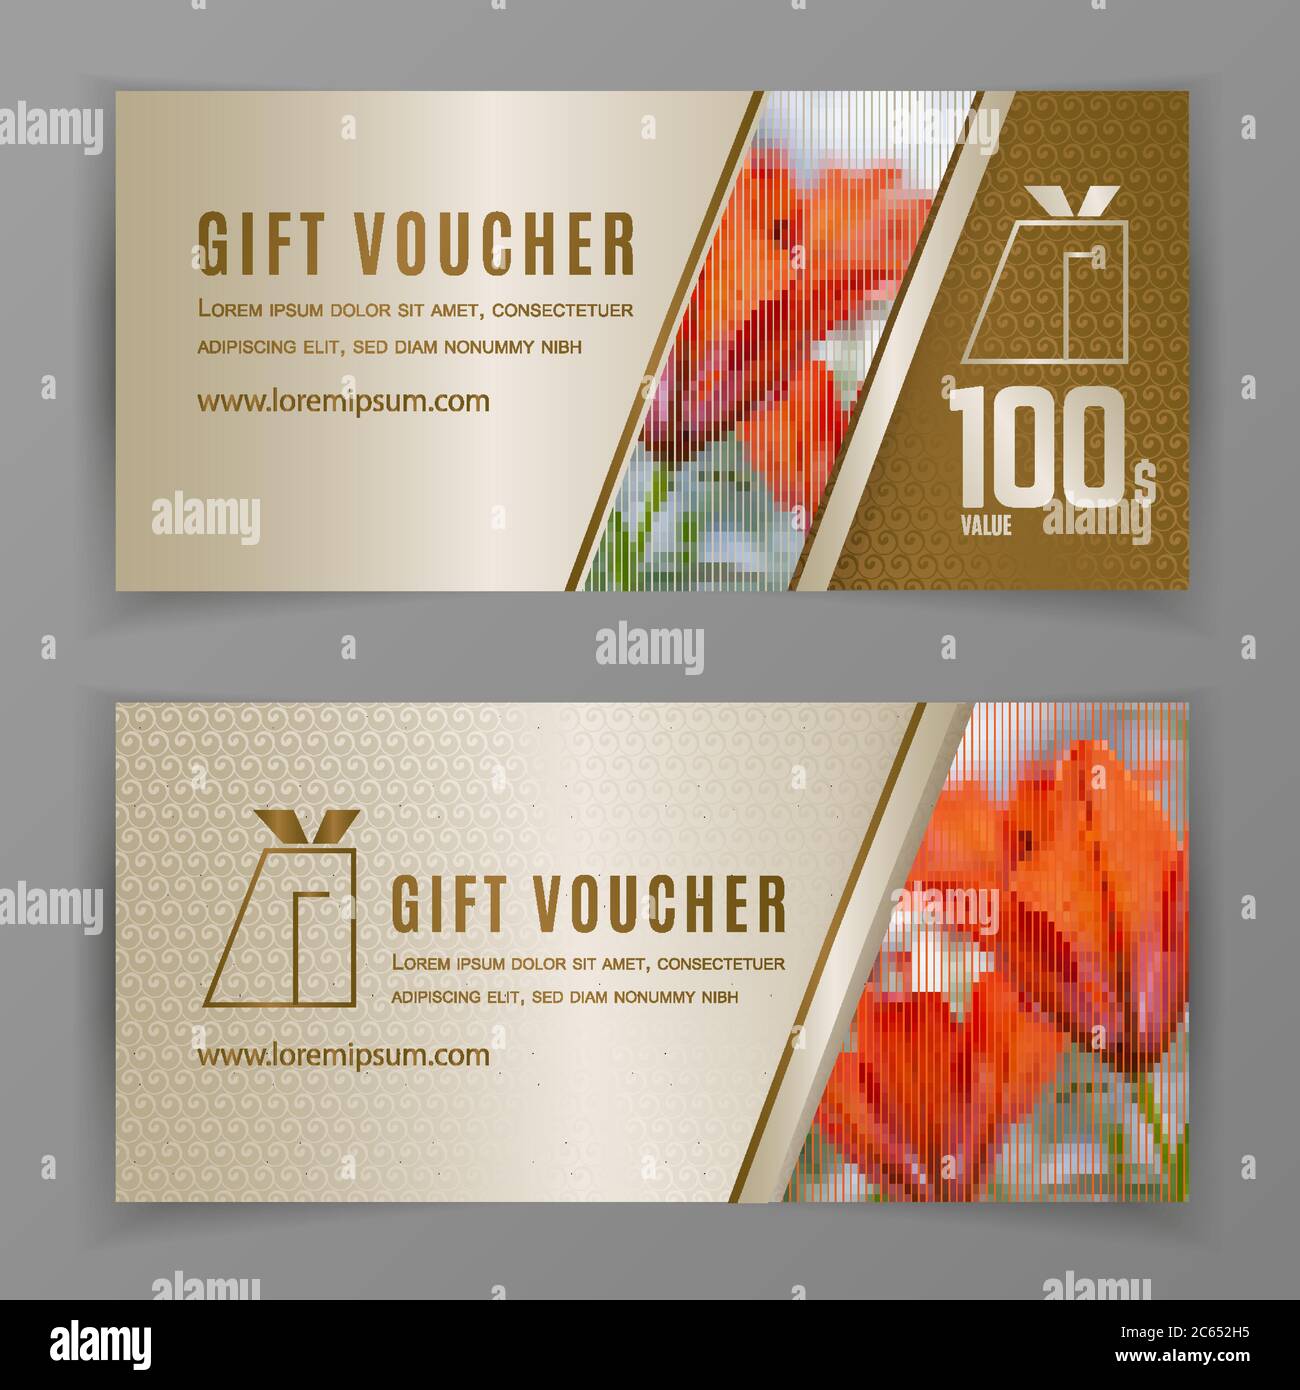 Premium Vector  Gift voucher template design for opening beer